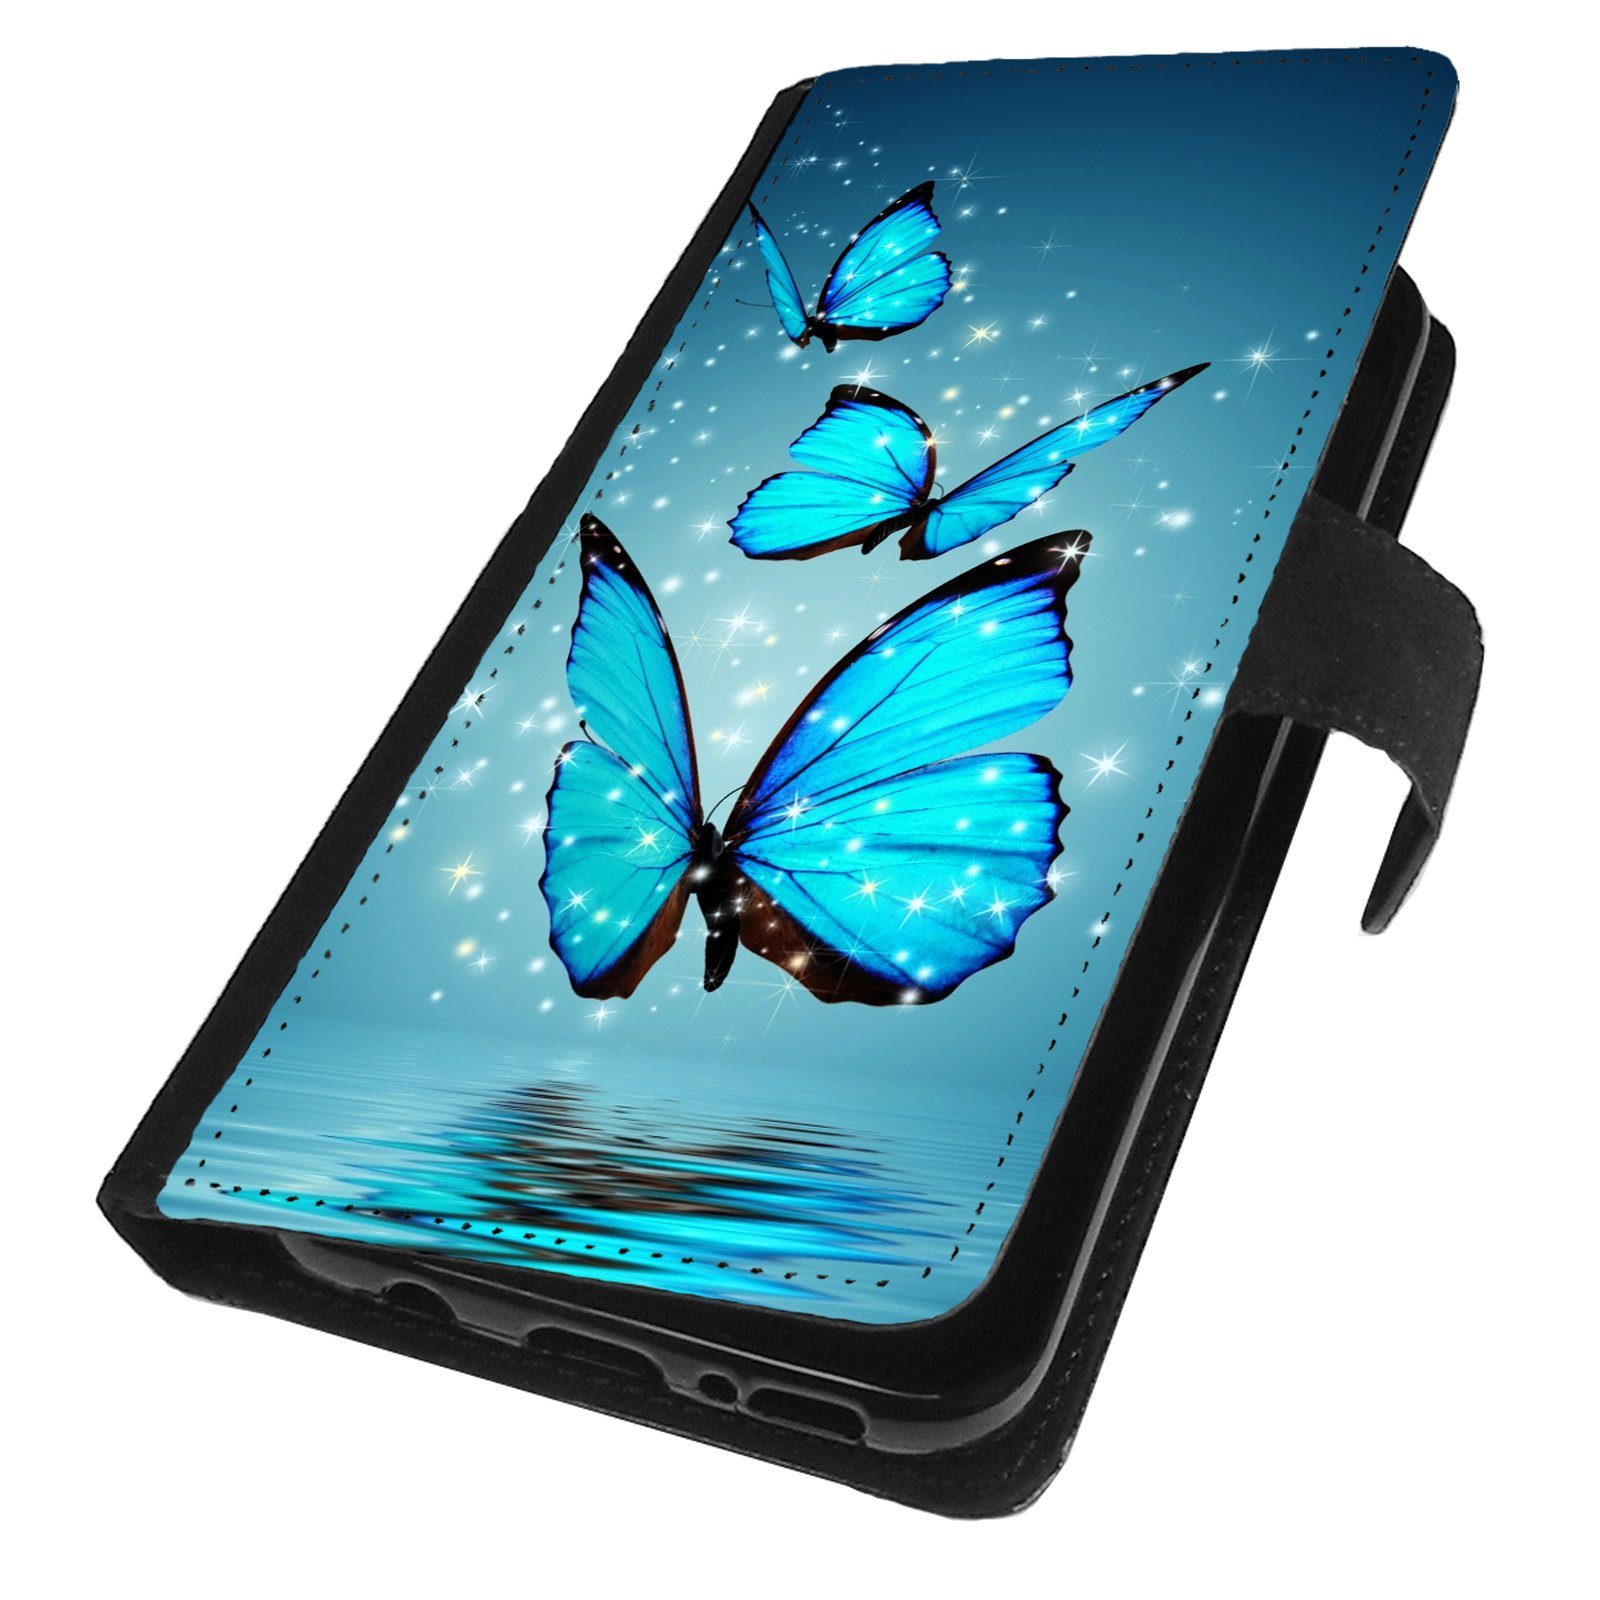 Traumhuelle Handyhülle Für Samsung Galaxy S10 / S10 Plus / S10e Hülle Motiv  4, Schmetterling Handy Tasche Klapp Hülle Flip Case Etui Cover Silikon